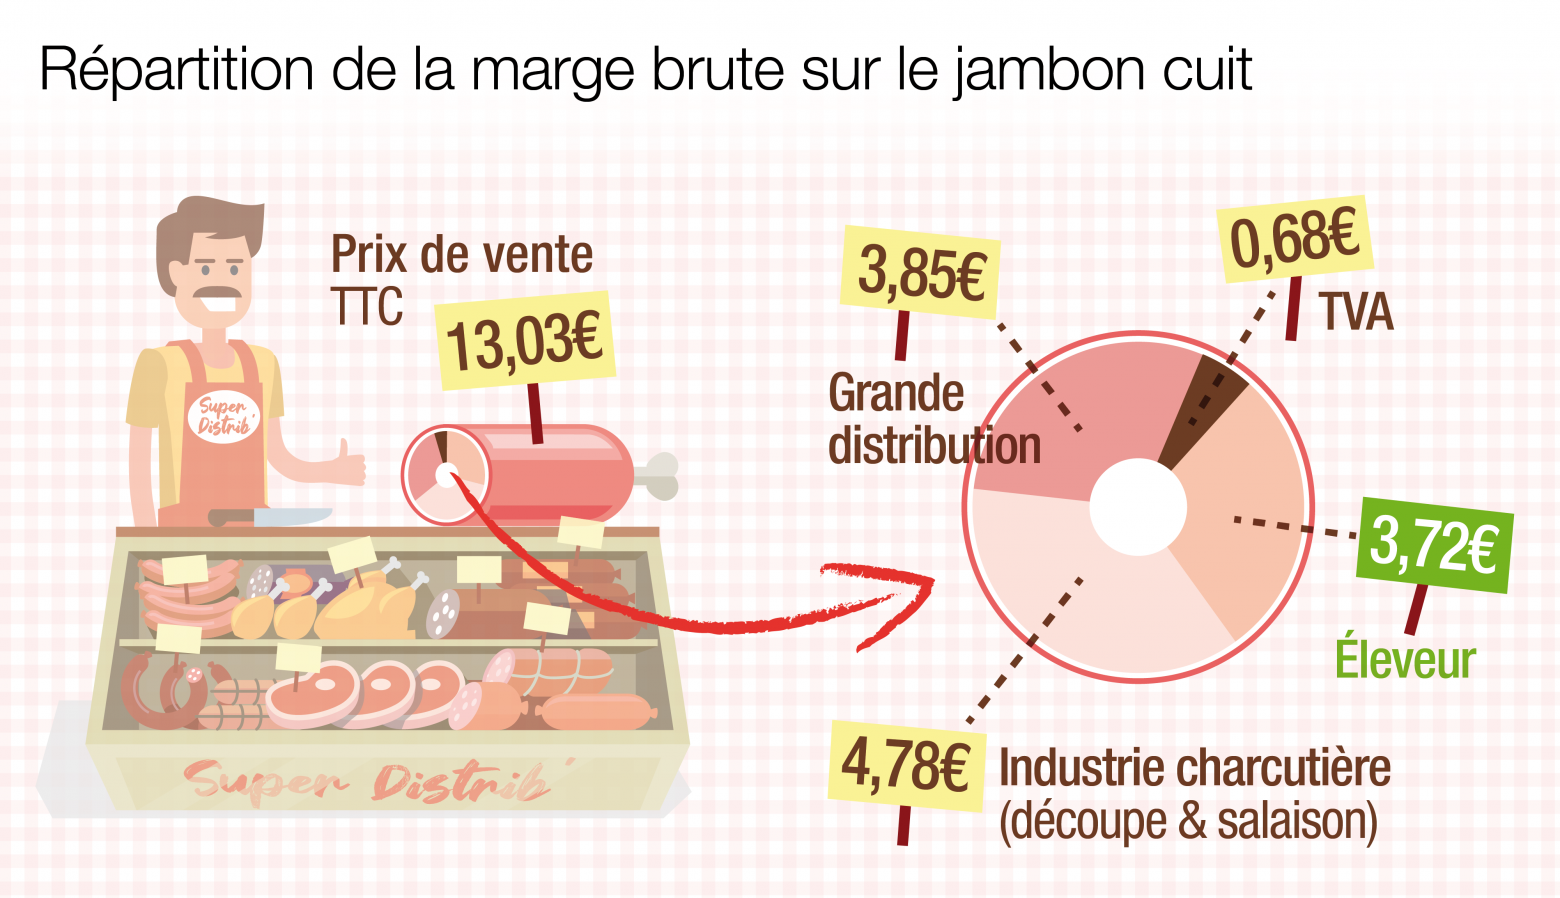 Répartition de la marge brute sur le jambon cuit :

prix payé par le consommateur : 13,03€ le kilo
marge de l’éleveur : 3,72€
marge de l’industrie charcutière (découpe et salaison) : 4,78 €
marge de la grande distribution : 3,85€  
TVA : 0,68€
